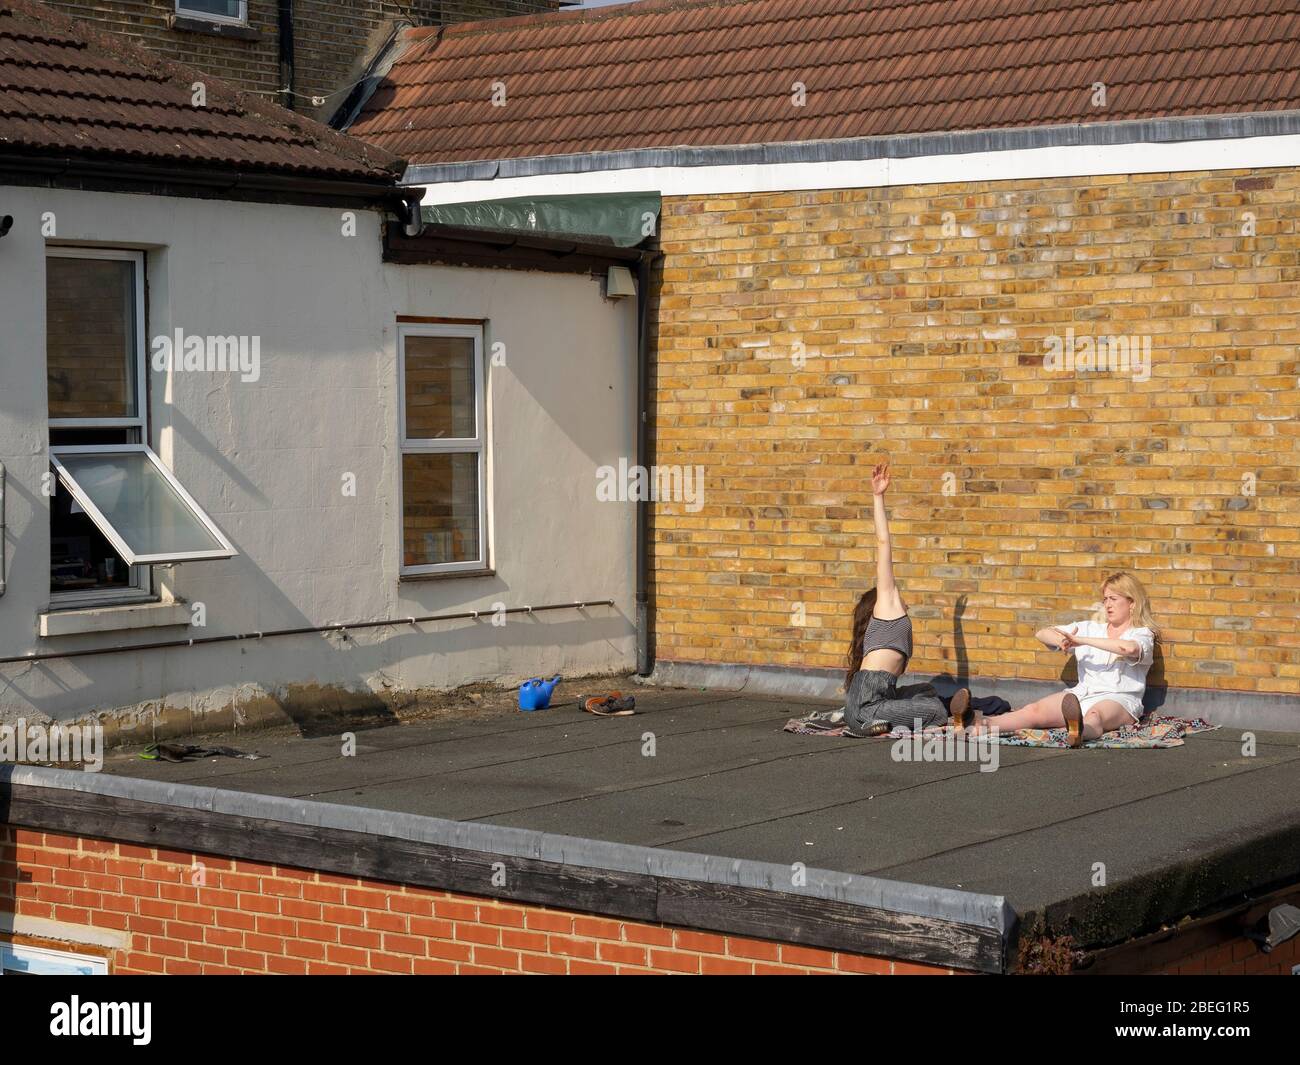 Londra. Leyton. REGNO UNITO. 11 aprile 2020. Vista di due giovani donne che prendono il sole e si esercitano sul tetto durante il Lockdown Covid-19. Foto Stock